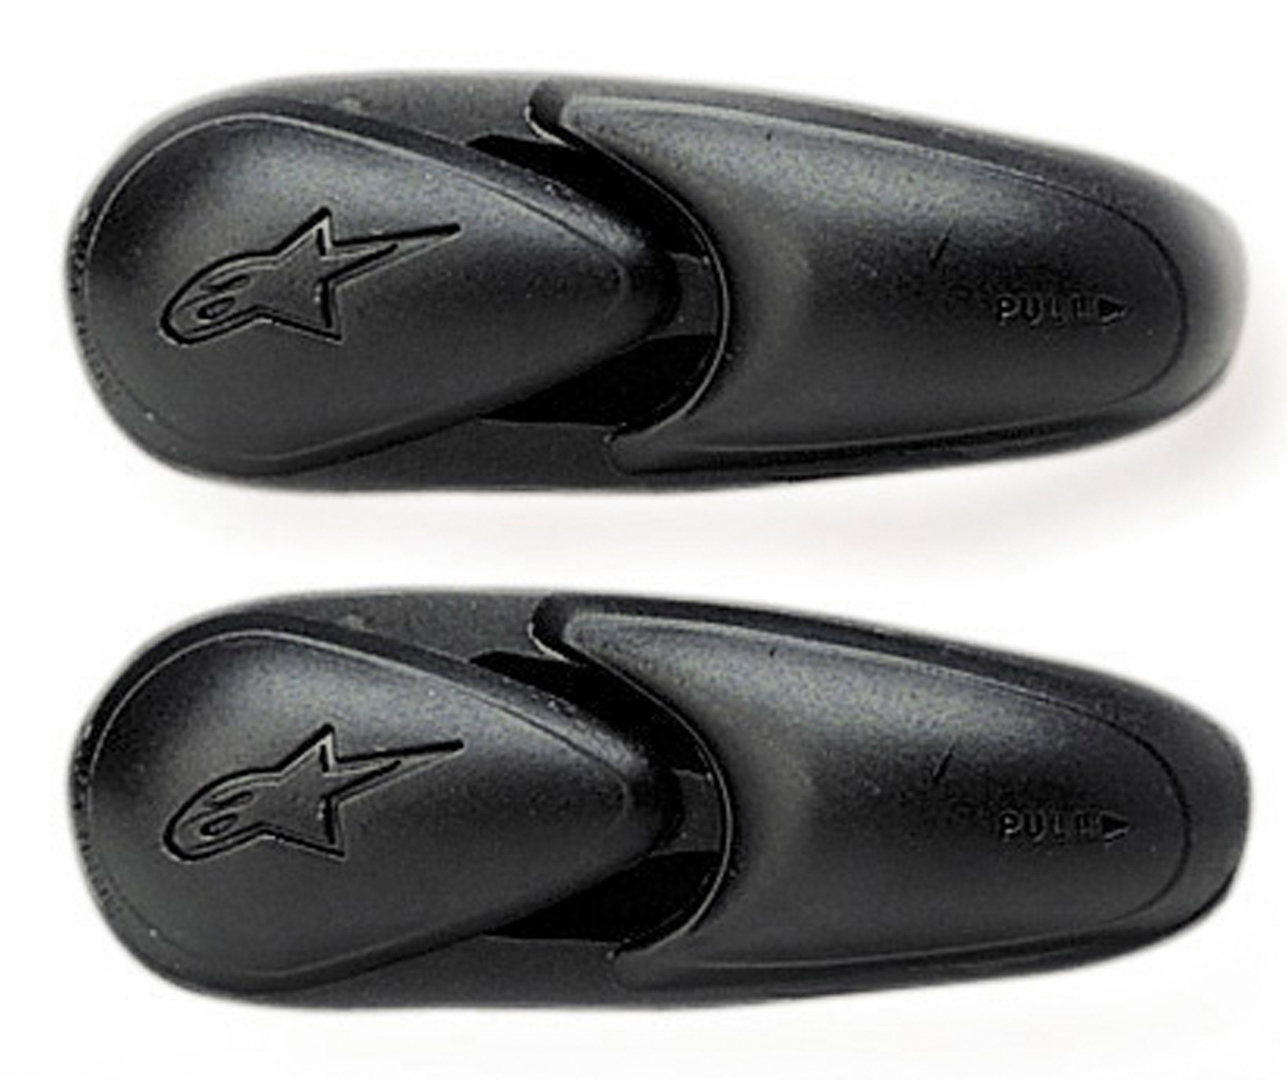 Защита Alpinestars Super/SMX-3 для пальцев ног ortocel защита пальцев ног 200 г